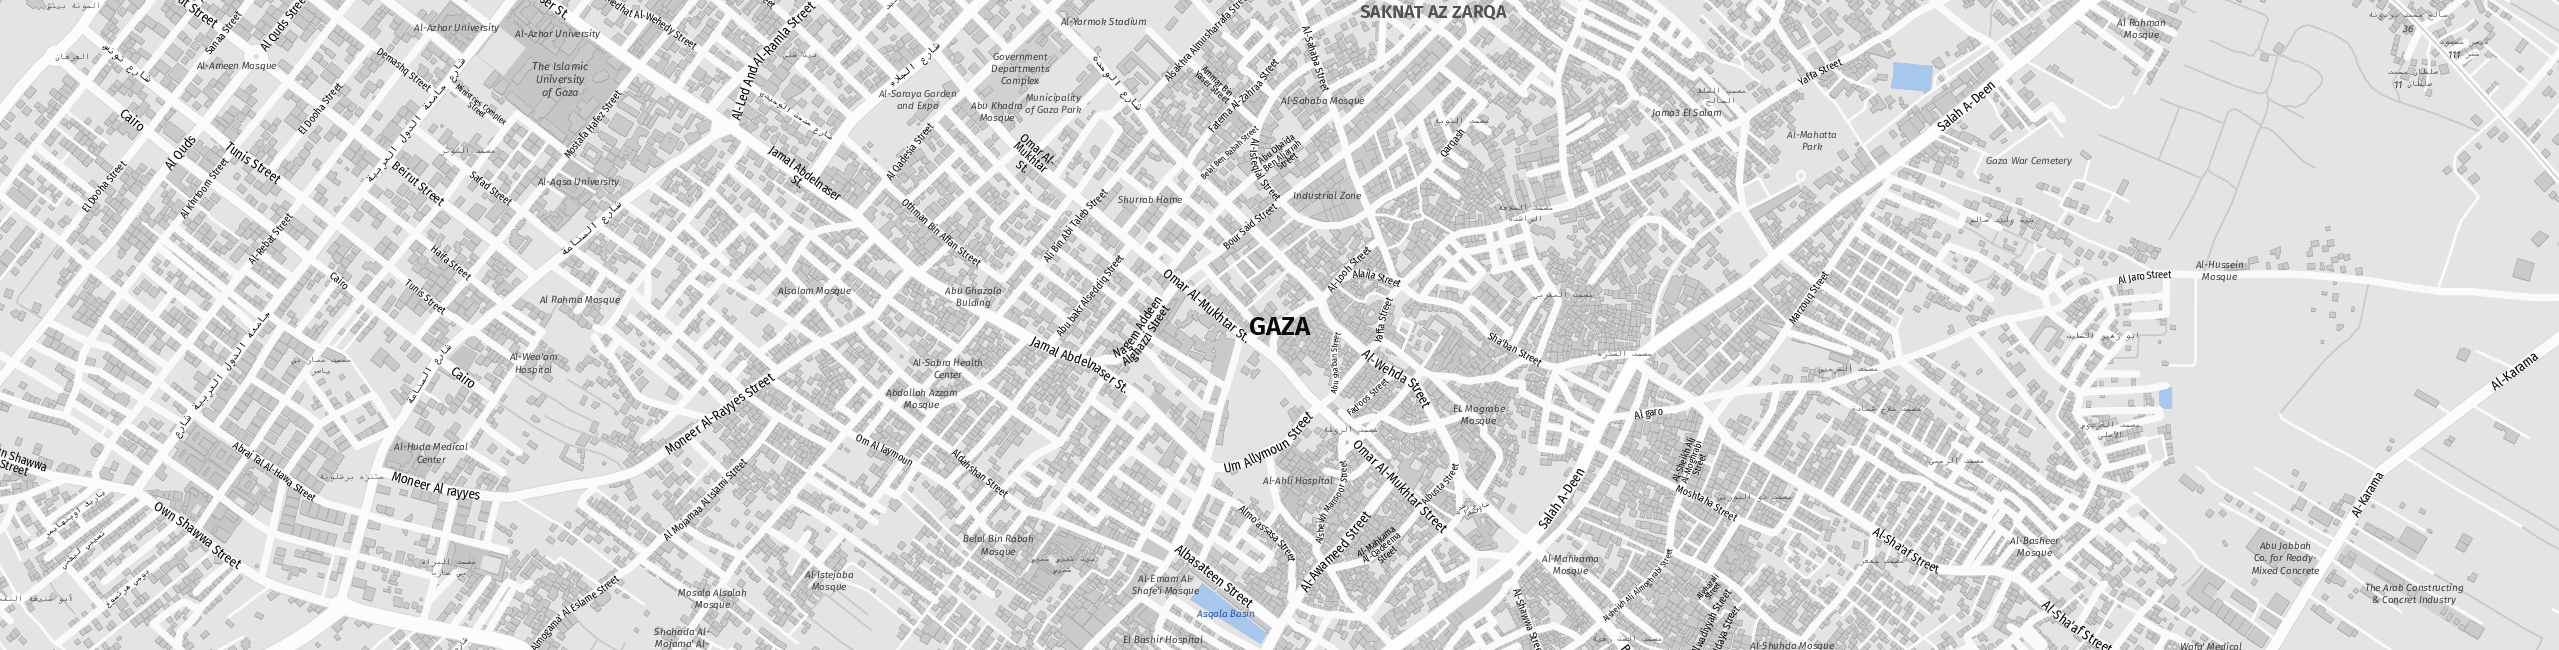 Stadtplan Gaza zum Downloaden.